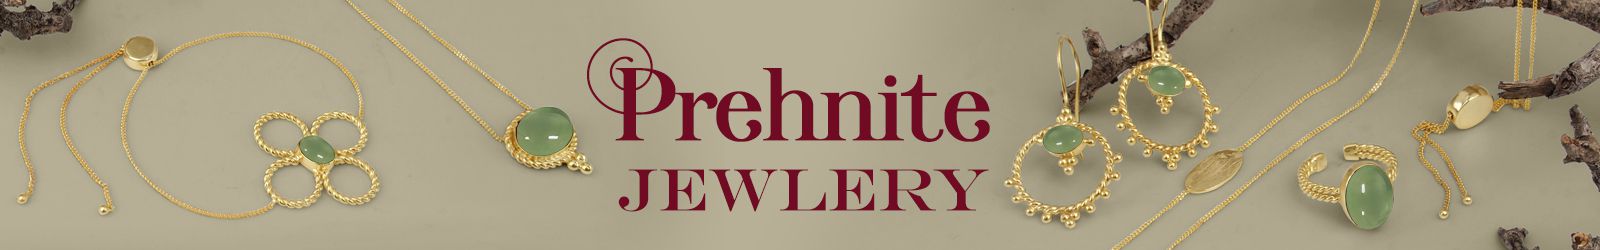 Silver Prehnite Jewelry Wholesale Supplier